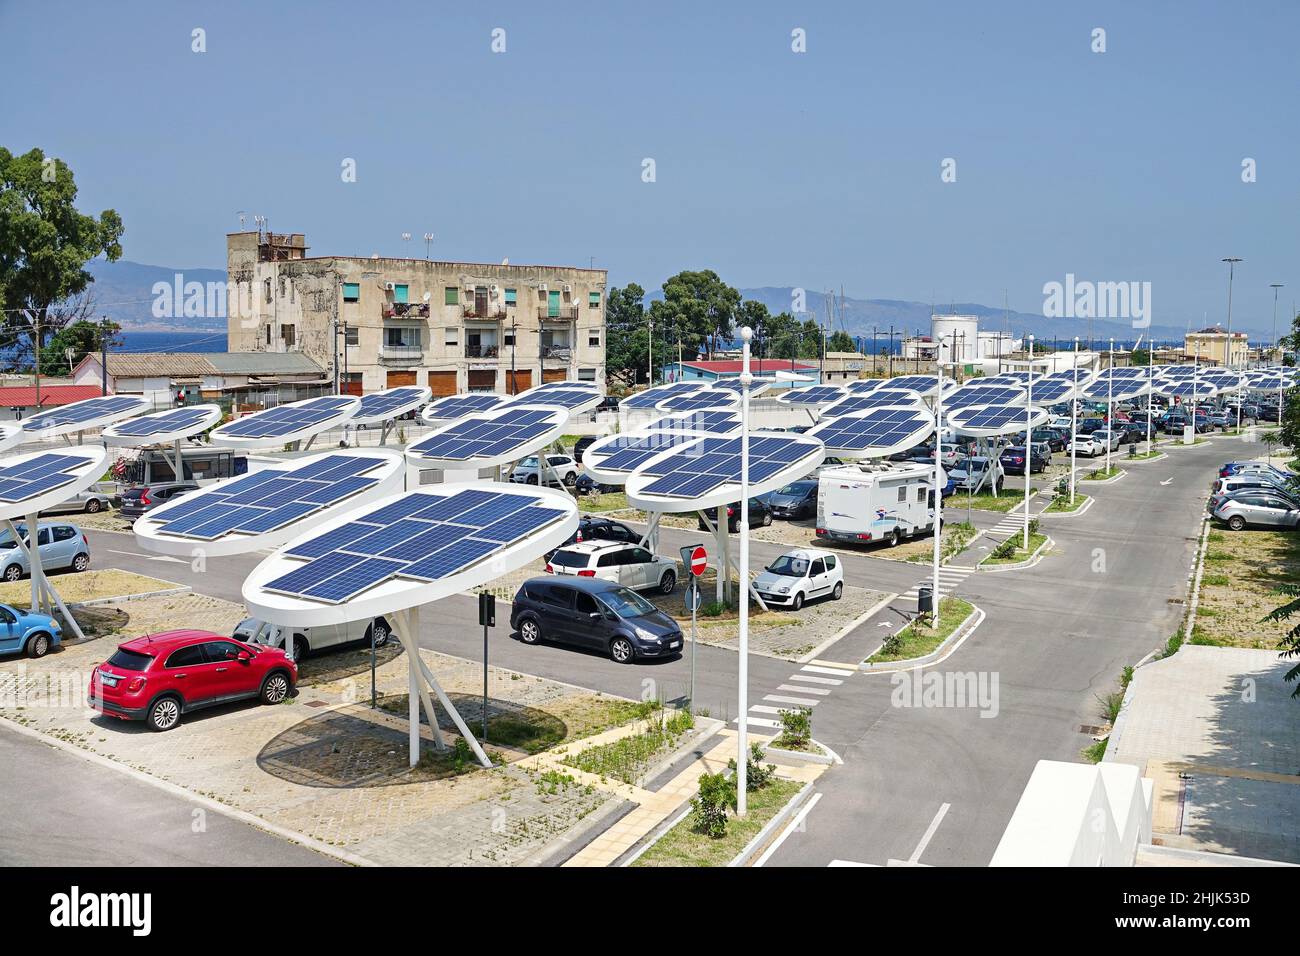 Sonnenkollektoren auf einem Parkplatz. Unternehmen installieren erneuerbare Energiequellen, um ihre CO2-Bilanz zu reduzieren. Reggio Calabria, Italien - Juli 2021 Stockfoto